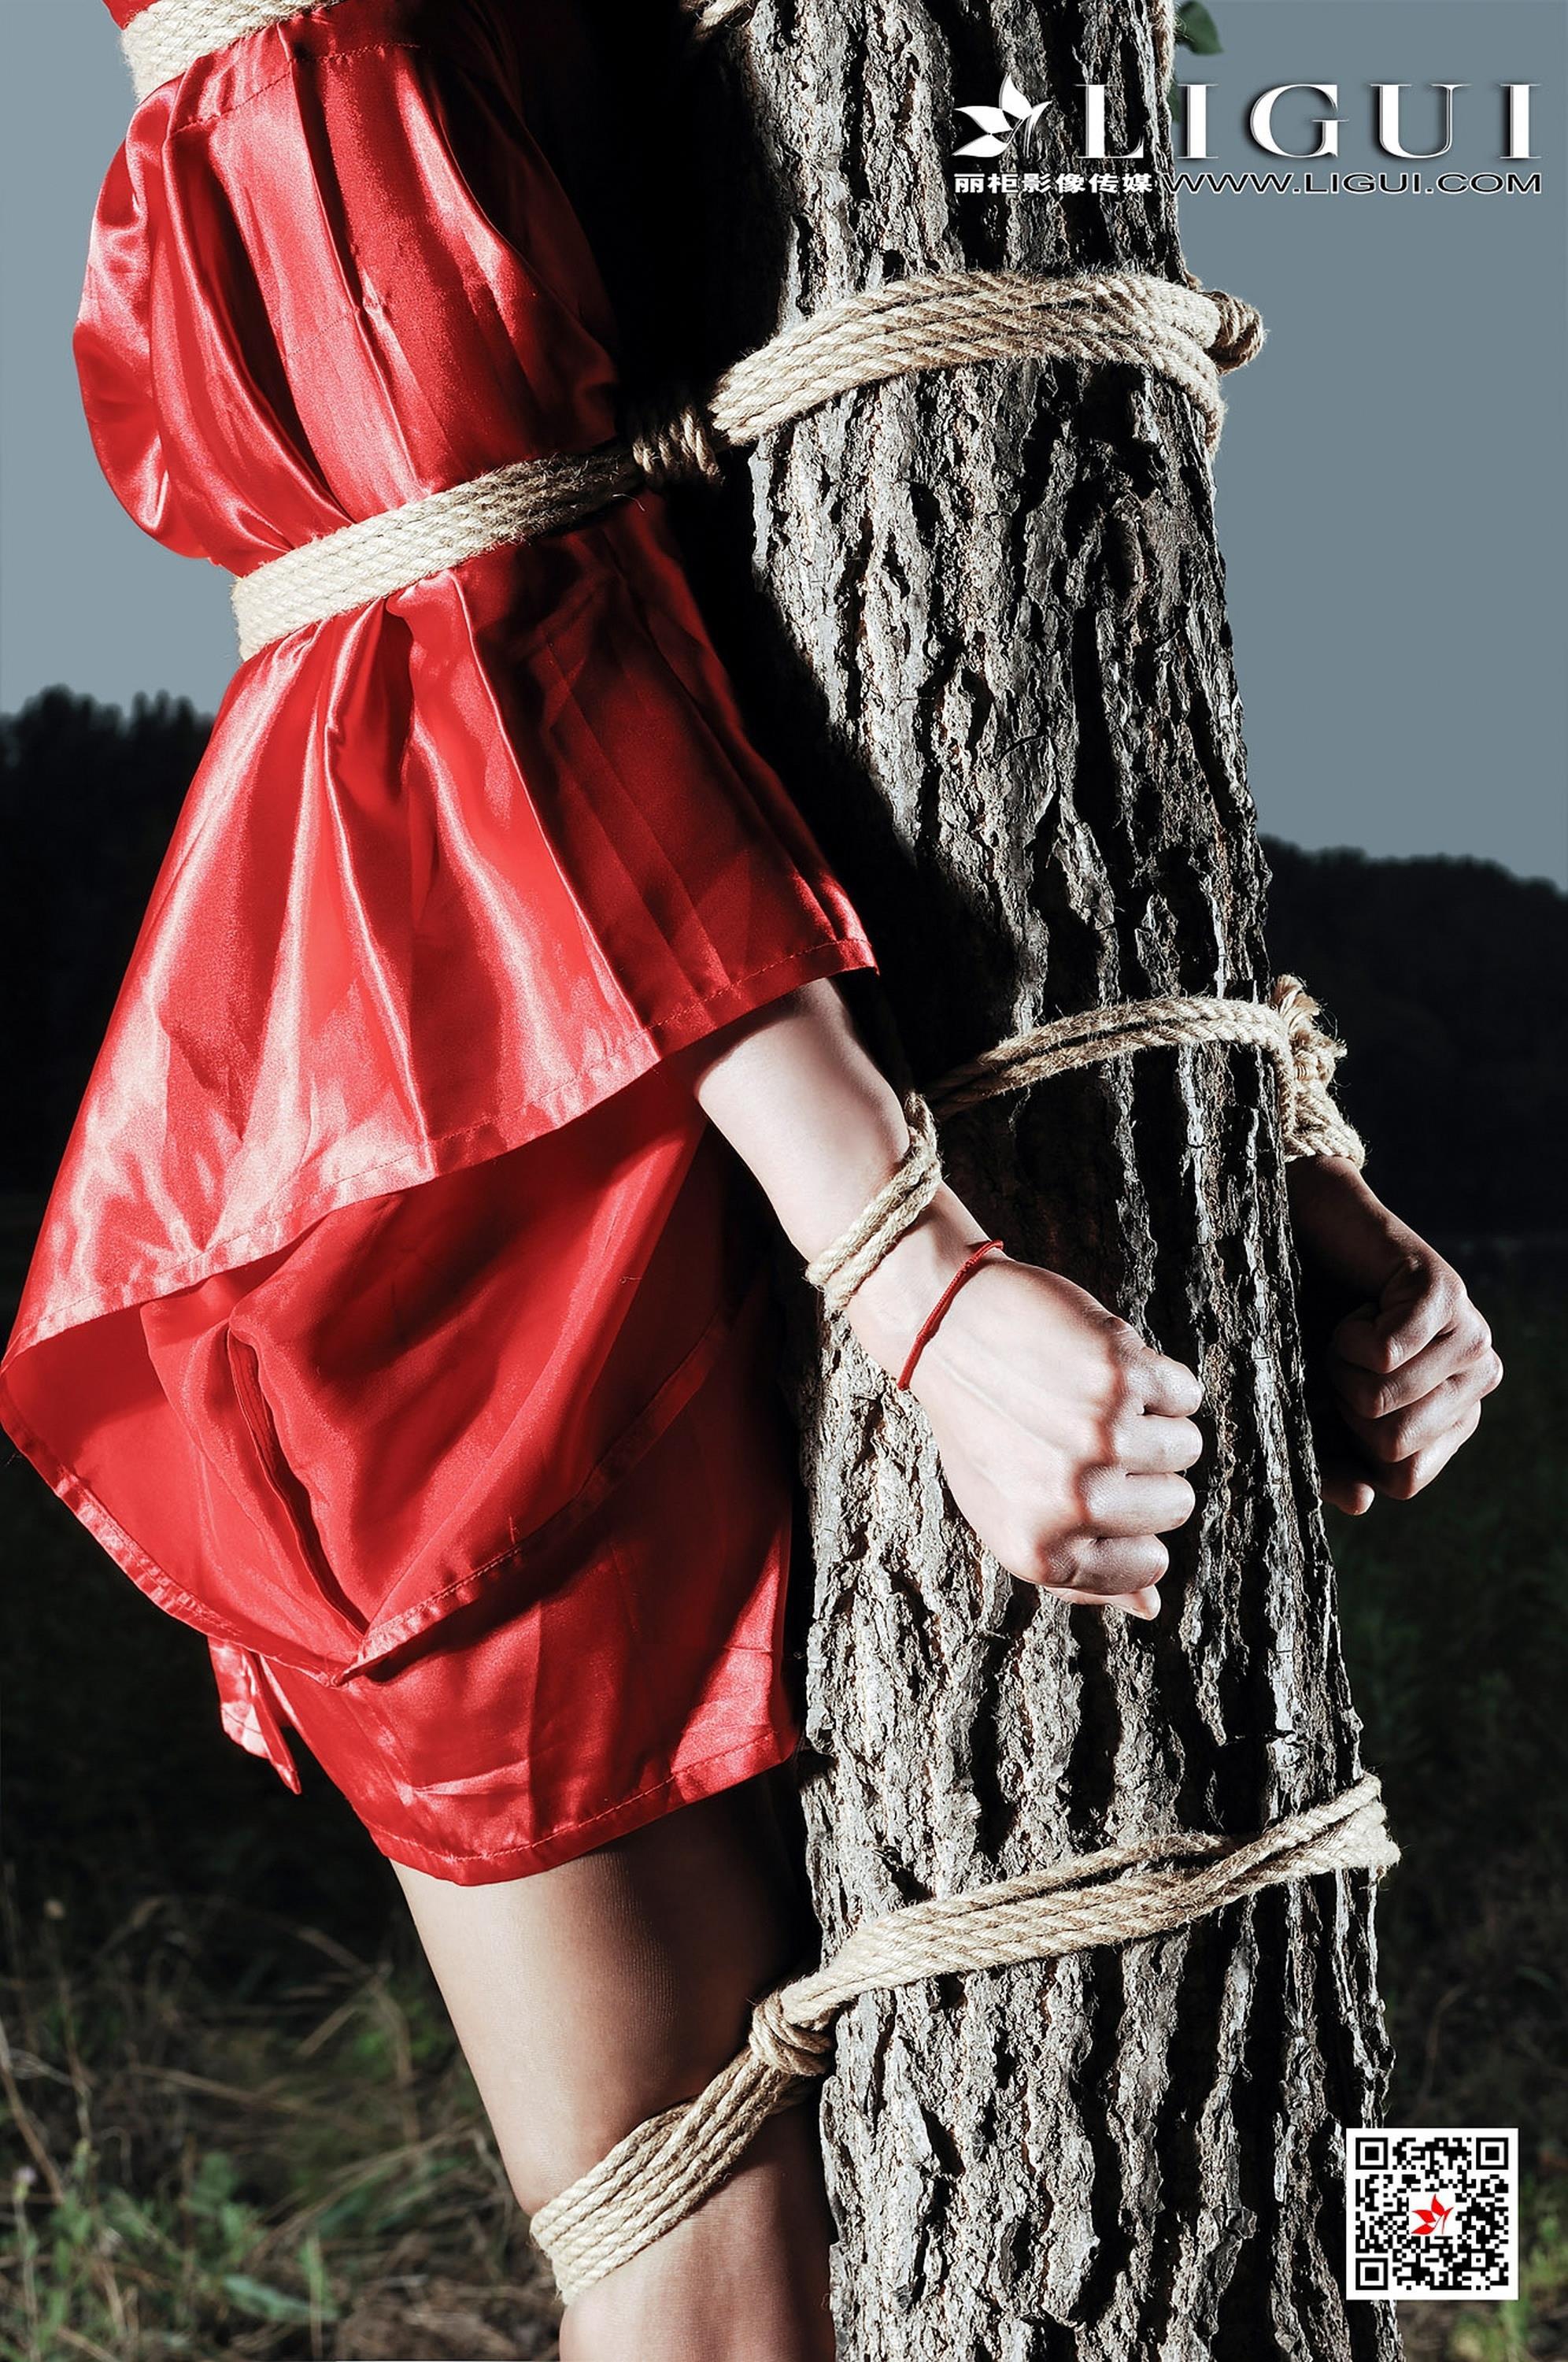 [Ligui丽柜会所]2018-11-29 束缚捆绑美女 佩佩 红色和服加肉色丝袜美腿性感私房写真集,